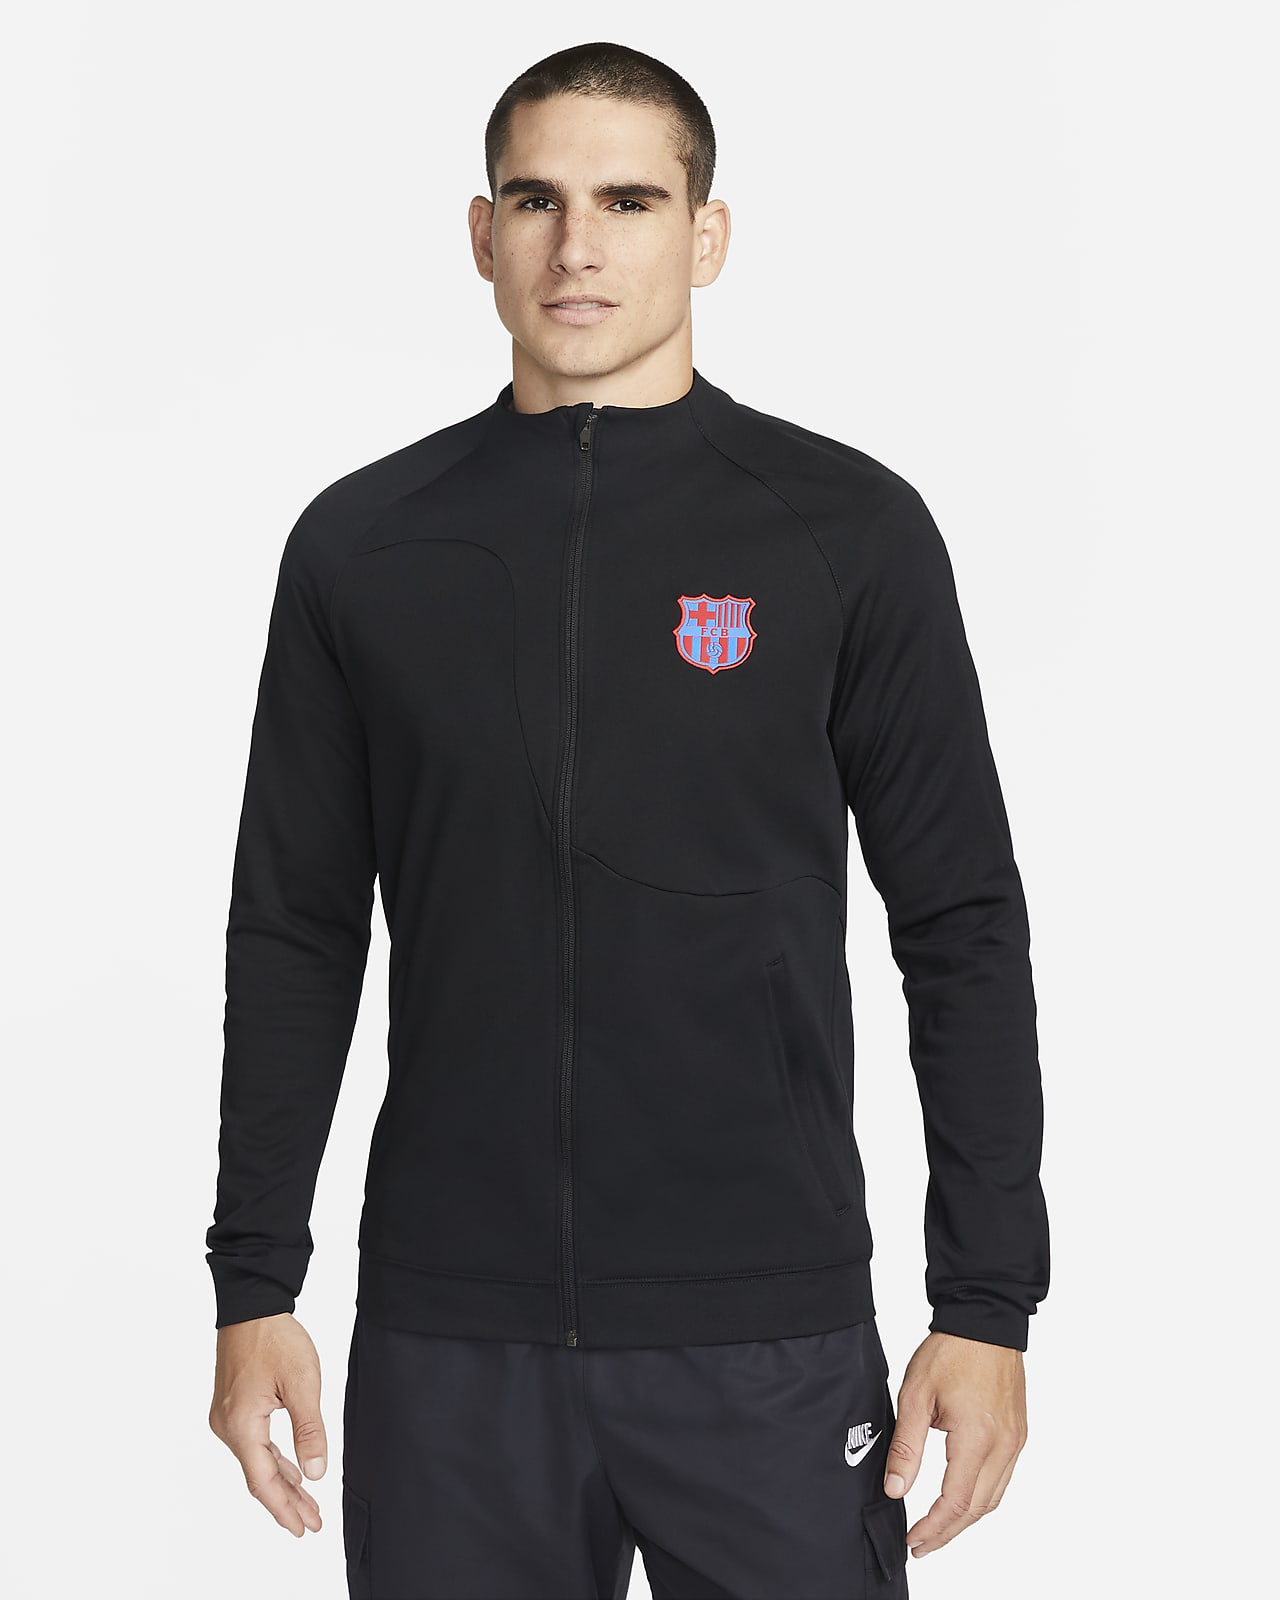 Raramente dos el plastico FC Barcelona Academy Pro Men's Knit Soccer Jacket. Nike.com